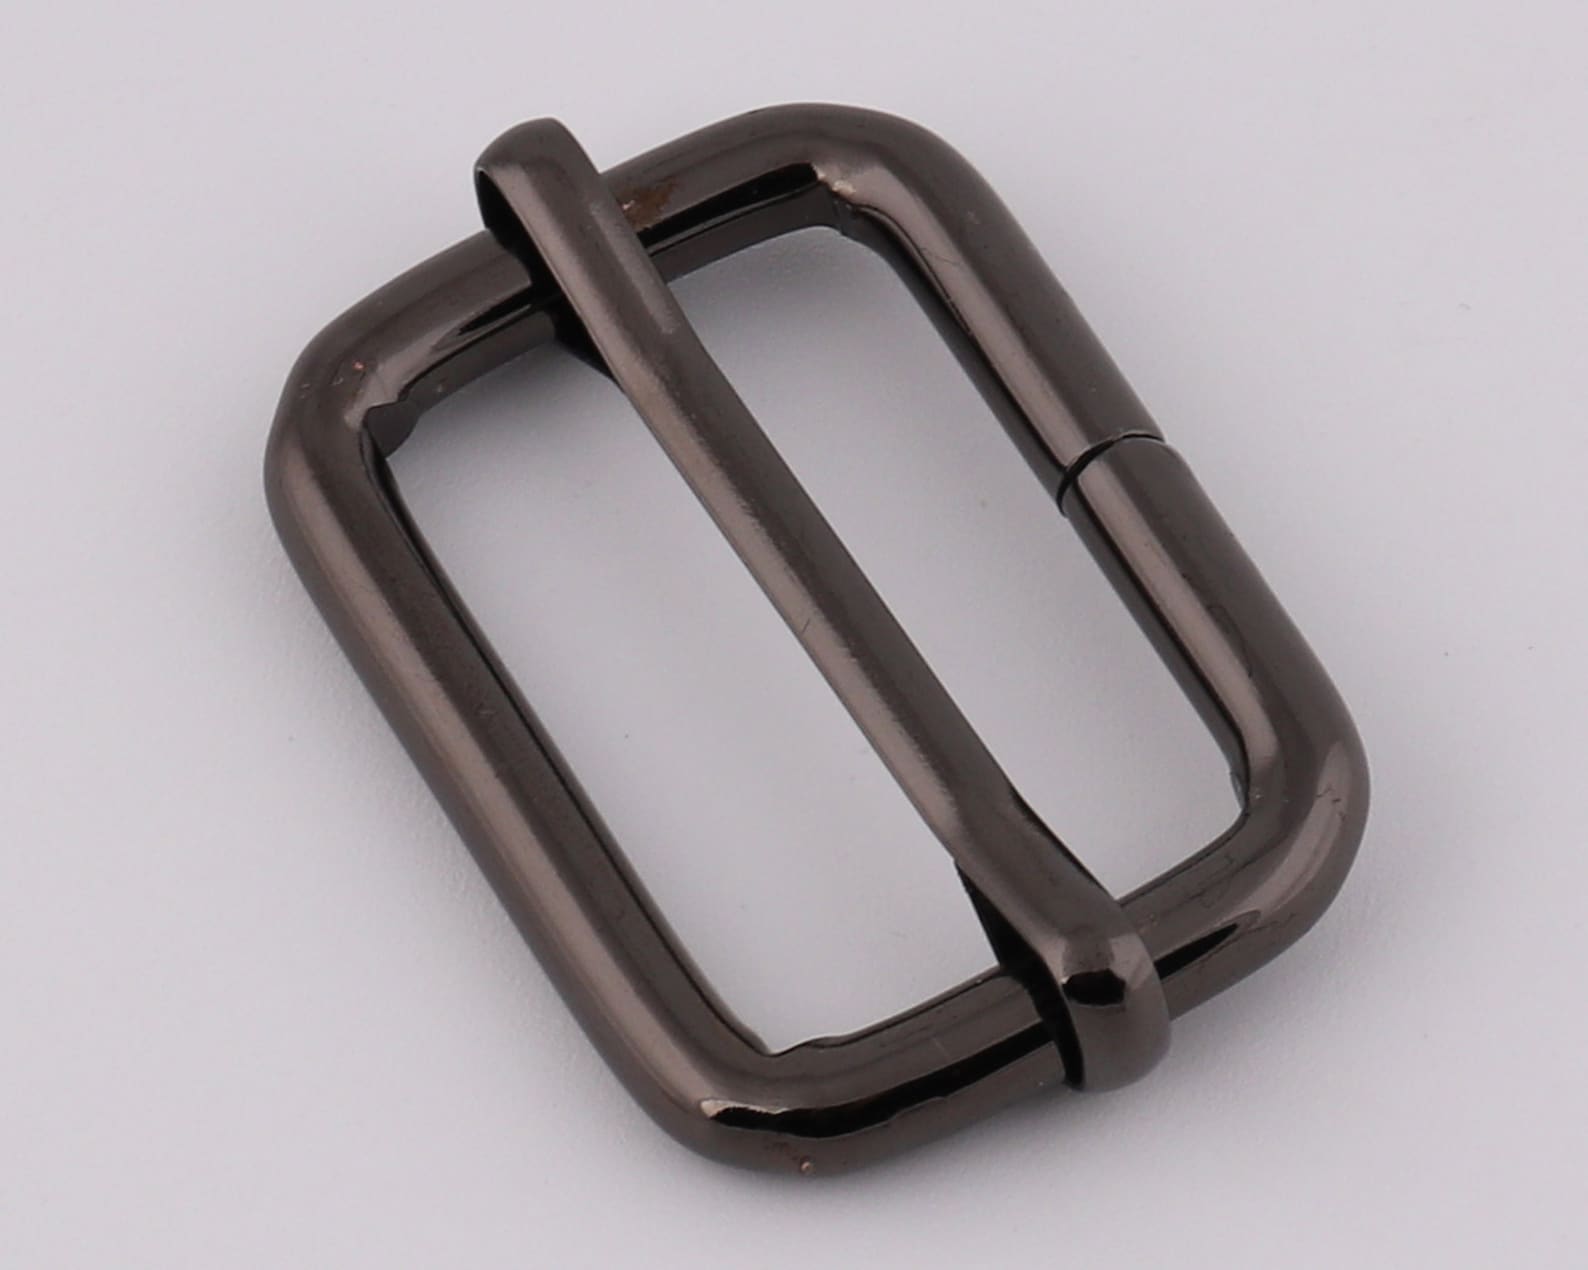 1.25 32mm Inner metal adjuster slide buckle strap | Etsy